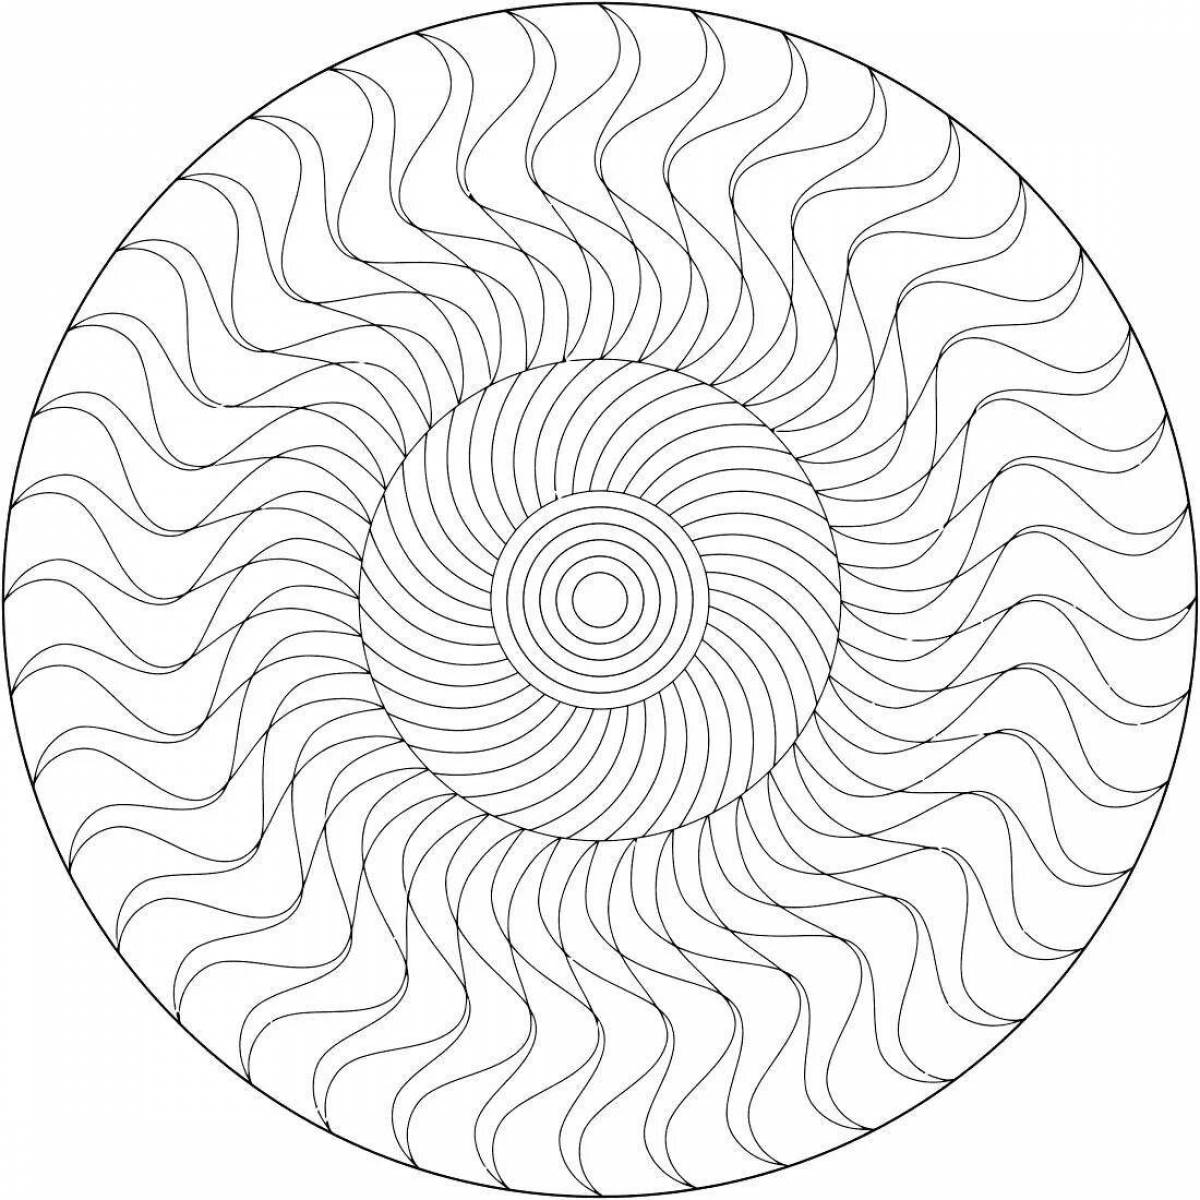 Exquisite miyagi spiral coloring